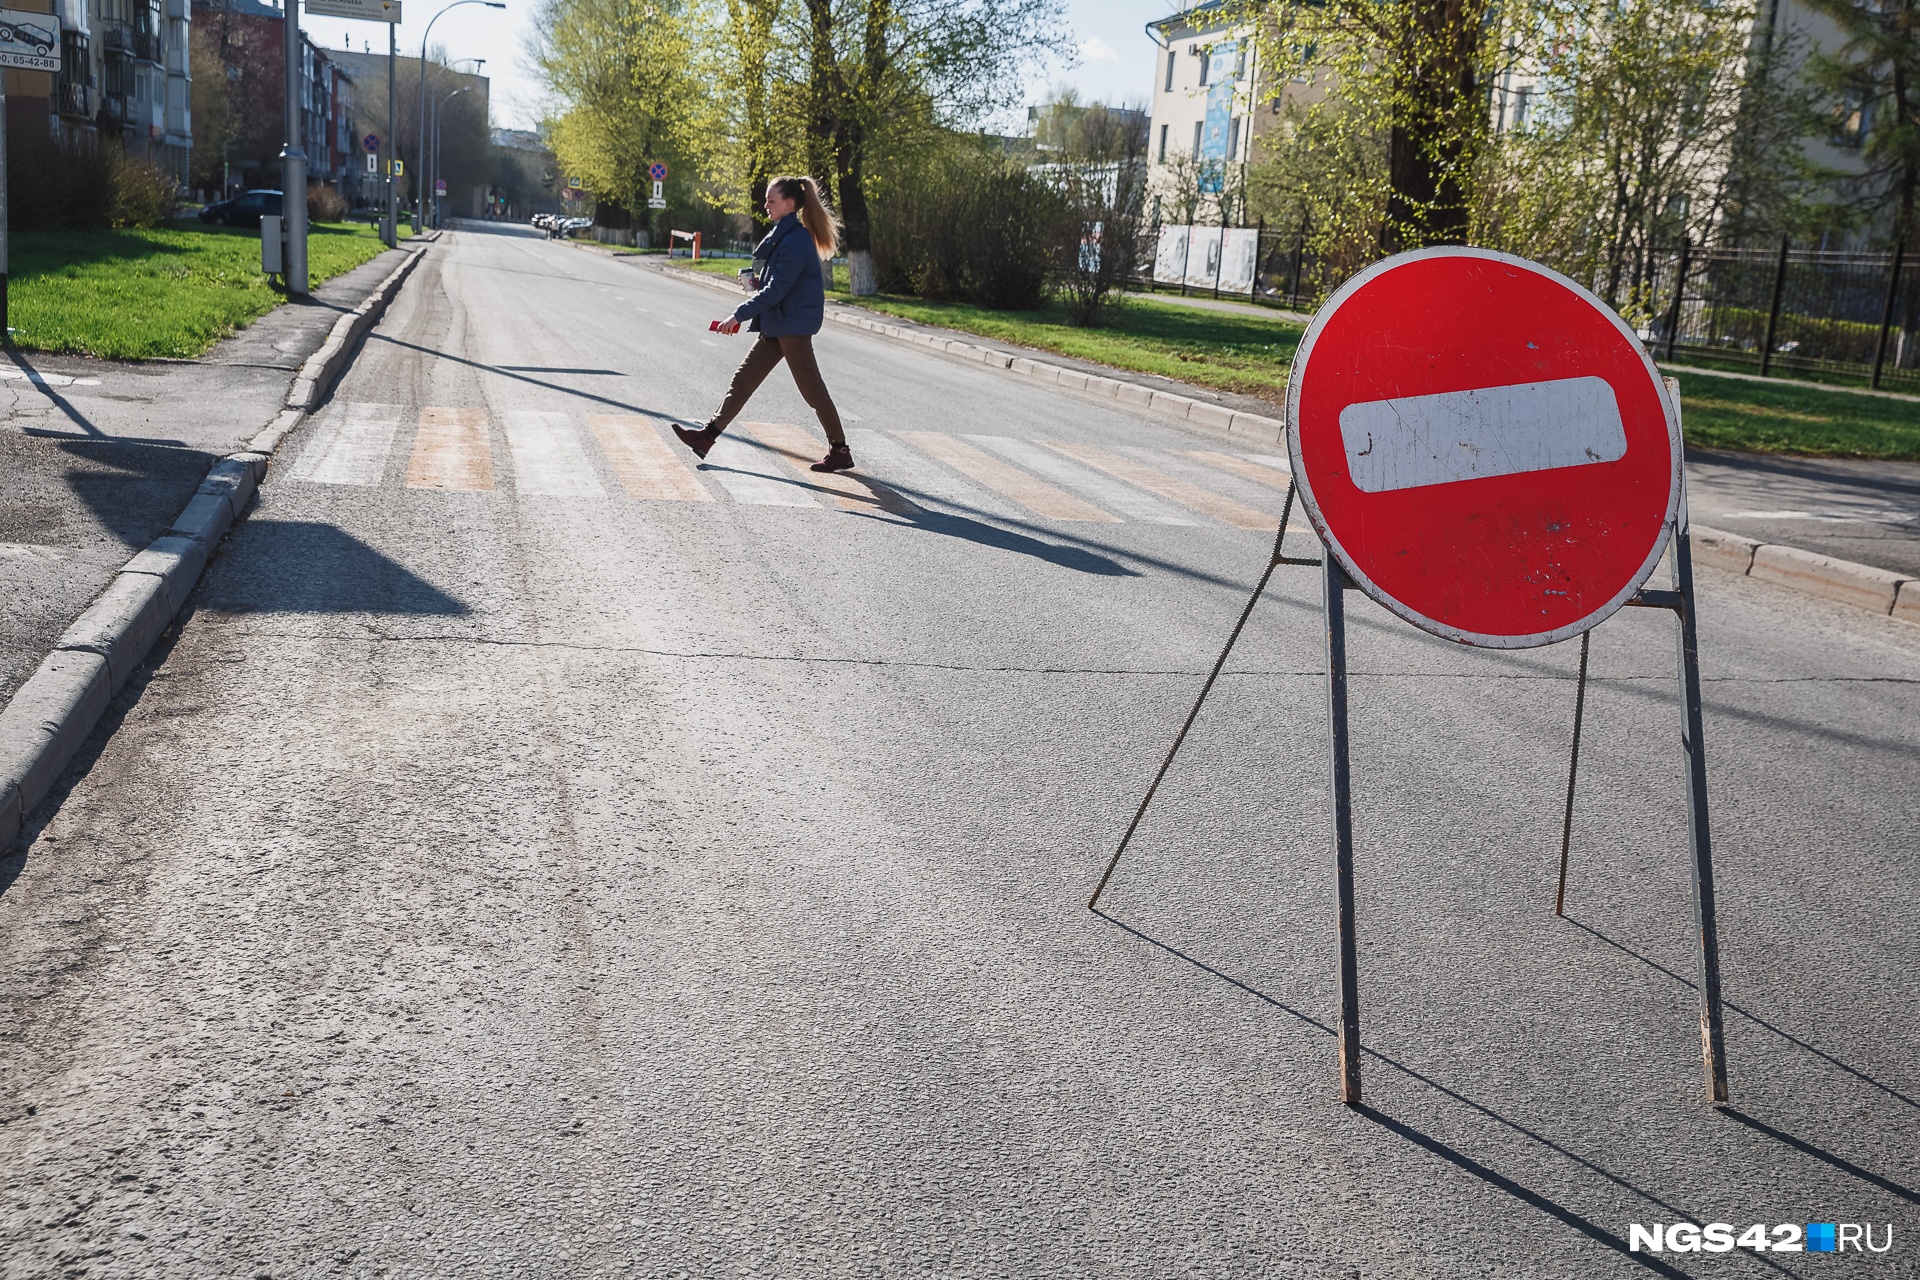 В Новокузнецке ограничат движение из-за велогонки на 100 км. Рассказываем, какие улицы перекроют